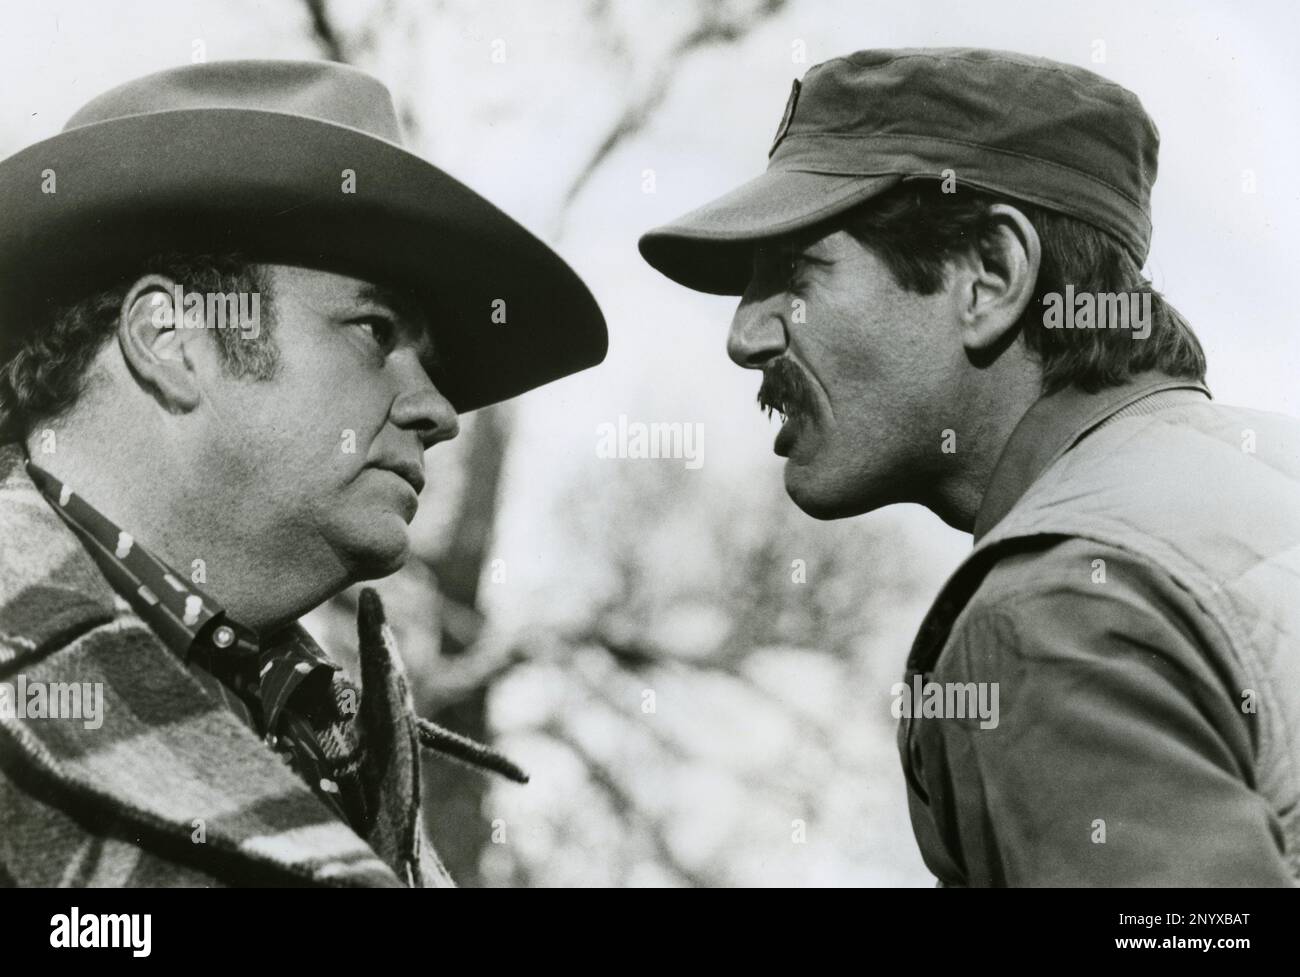 Acteurs Hoyt Axton et Peter Coyote dans le film espèces menacées, USA 1982 Banque D'Images